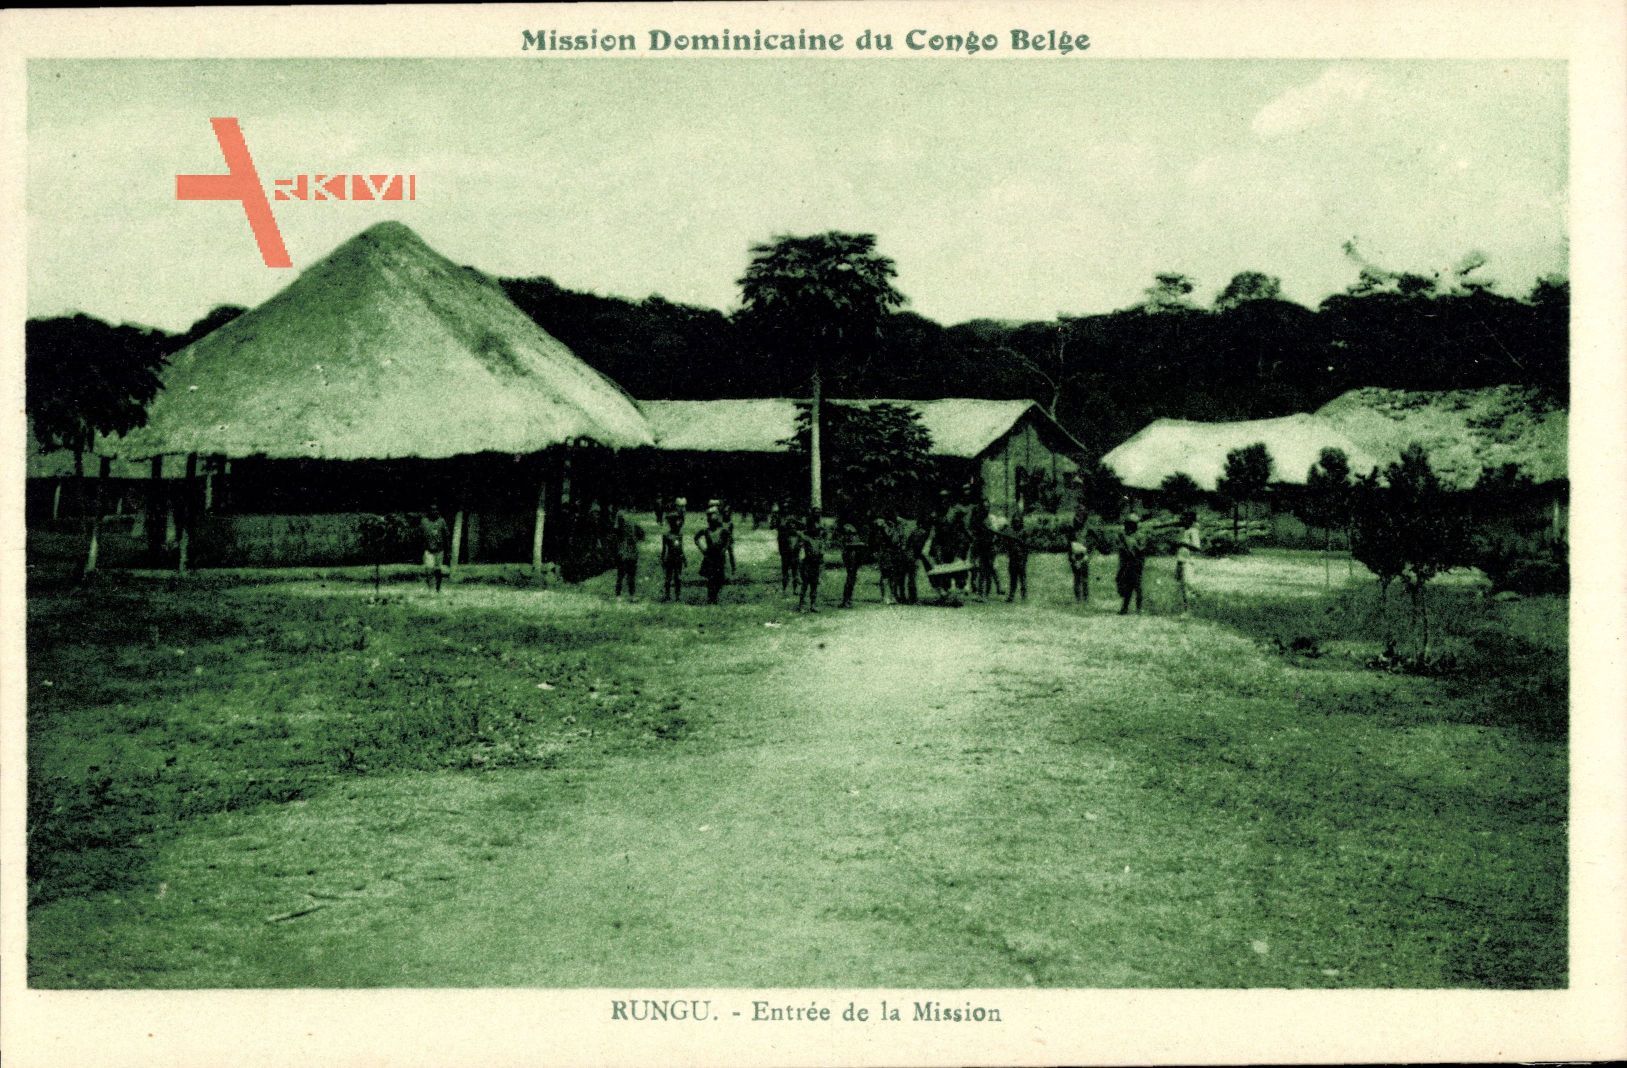 Rungu DR Kongo Zaire, Mission Dominicaine du Congo Belge,Entrée de la Mission